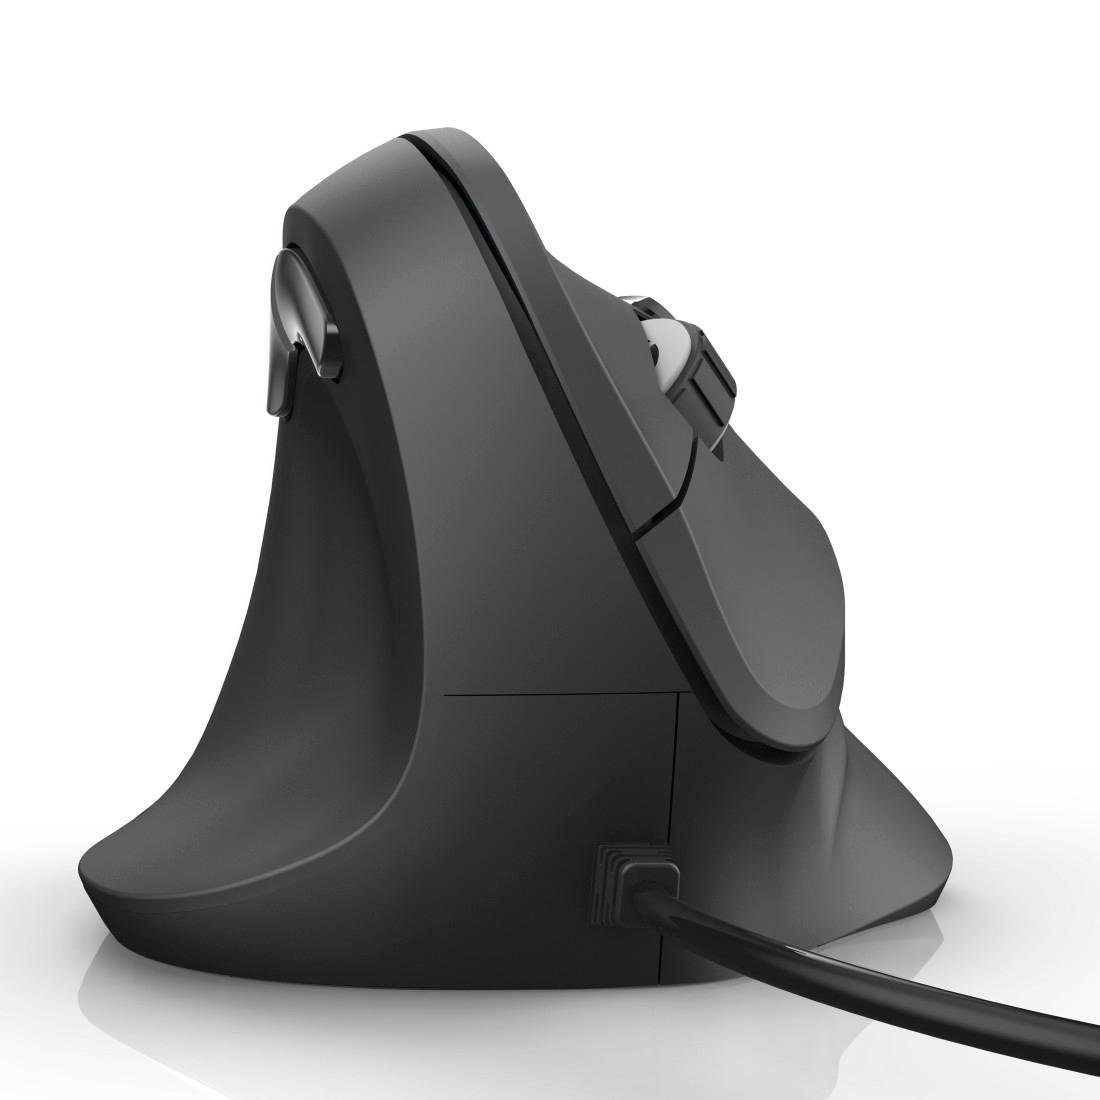 Hama Vertikale ergonomische Linkshändermaus kabelgebunden EMC-500L Maus,  Für einfache Inbetriebnahme sorgt die Smart-Link-Technologie